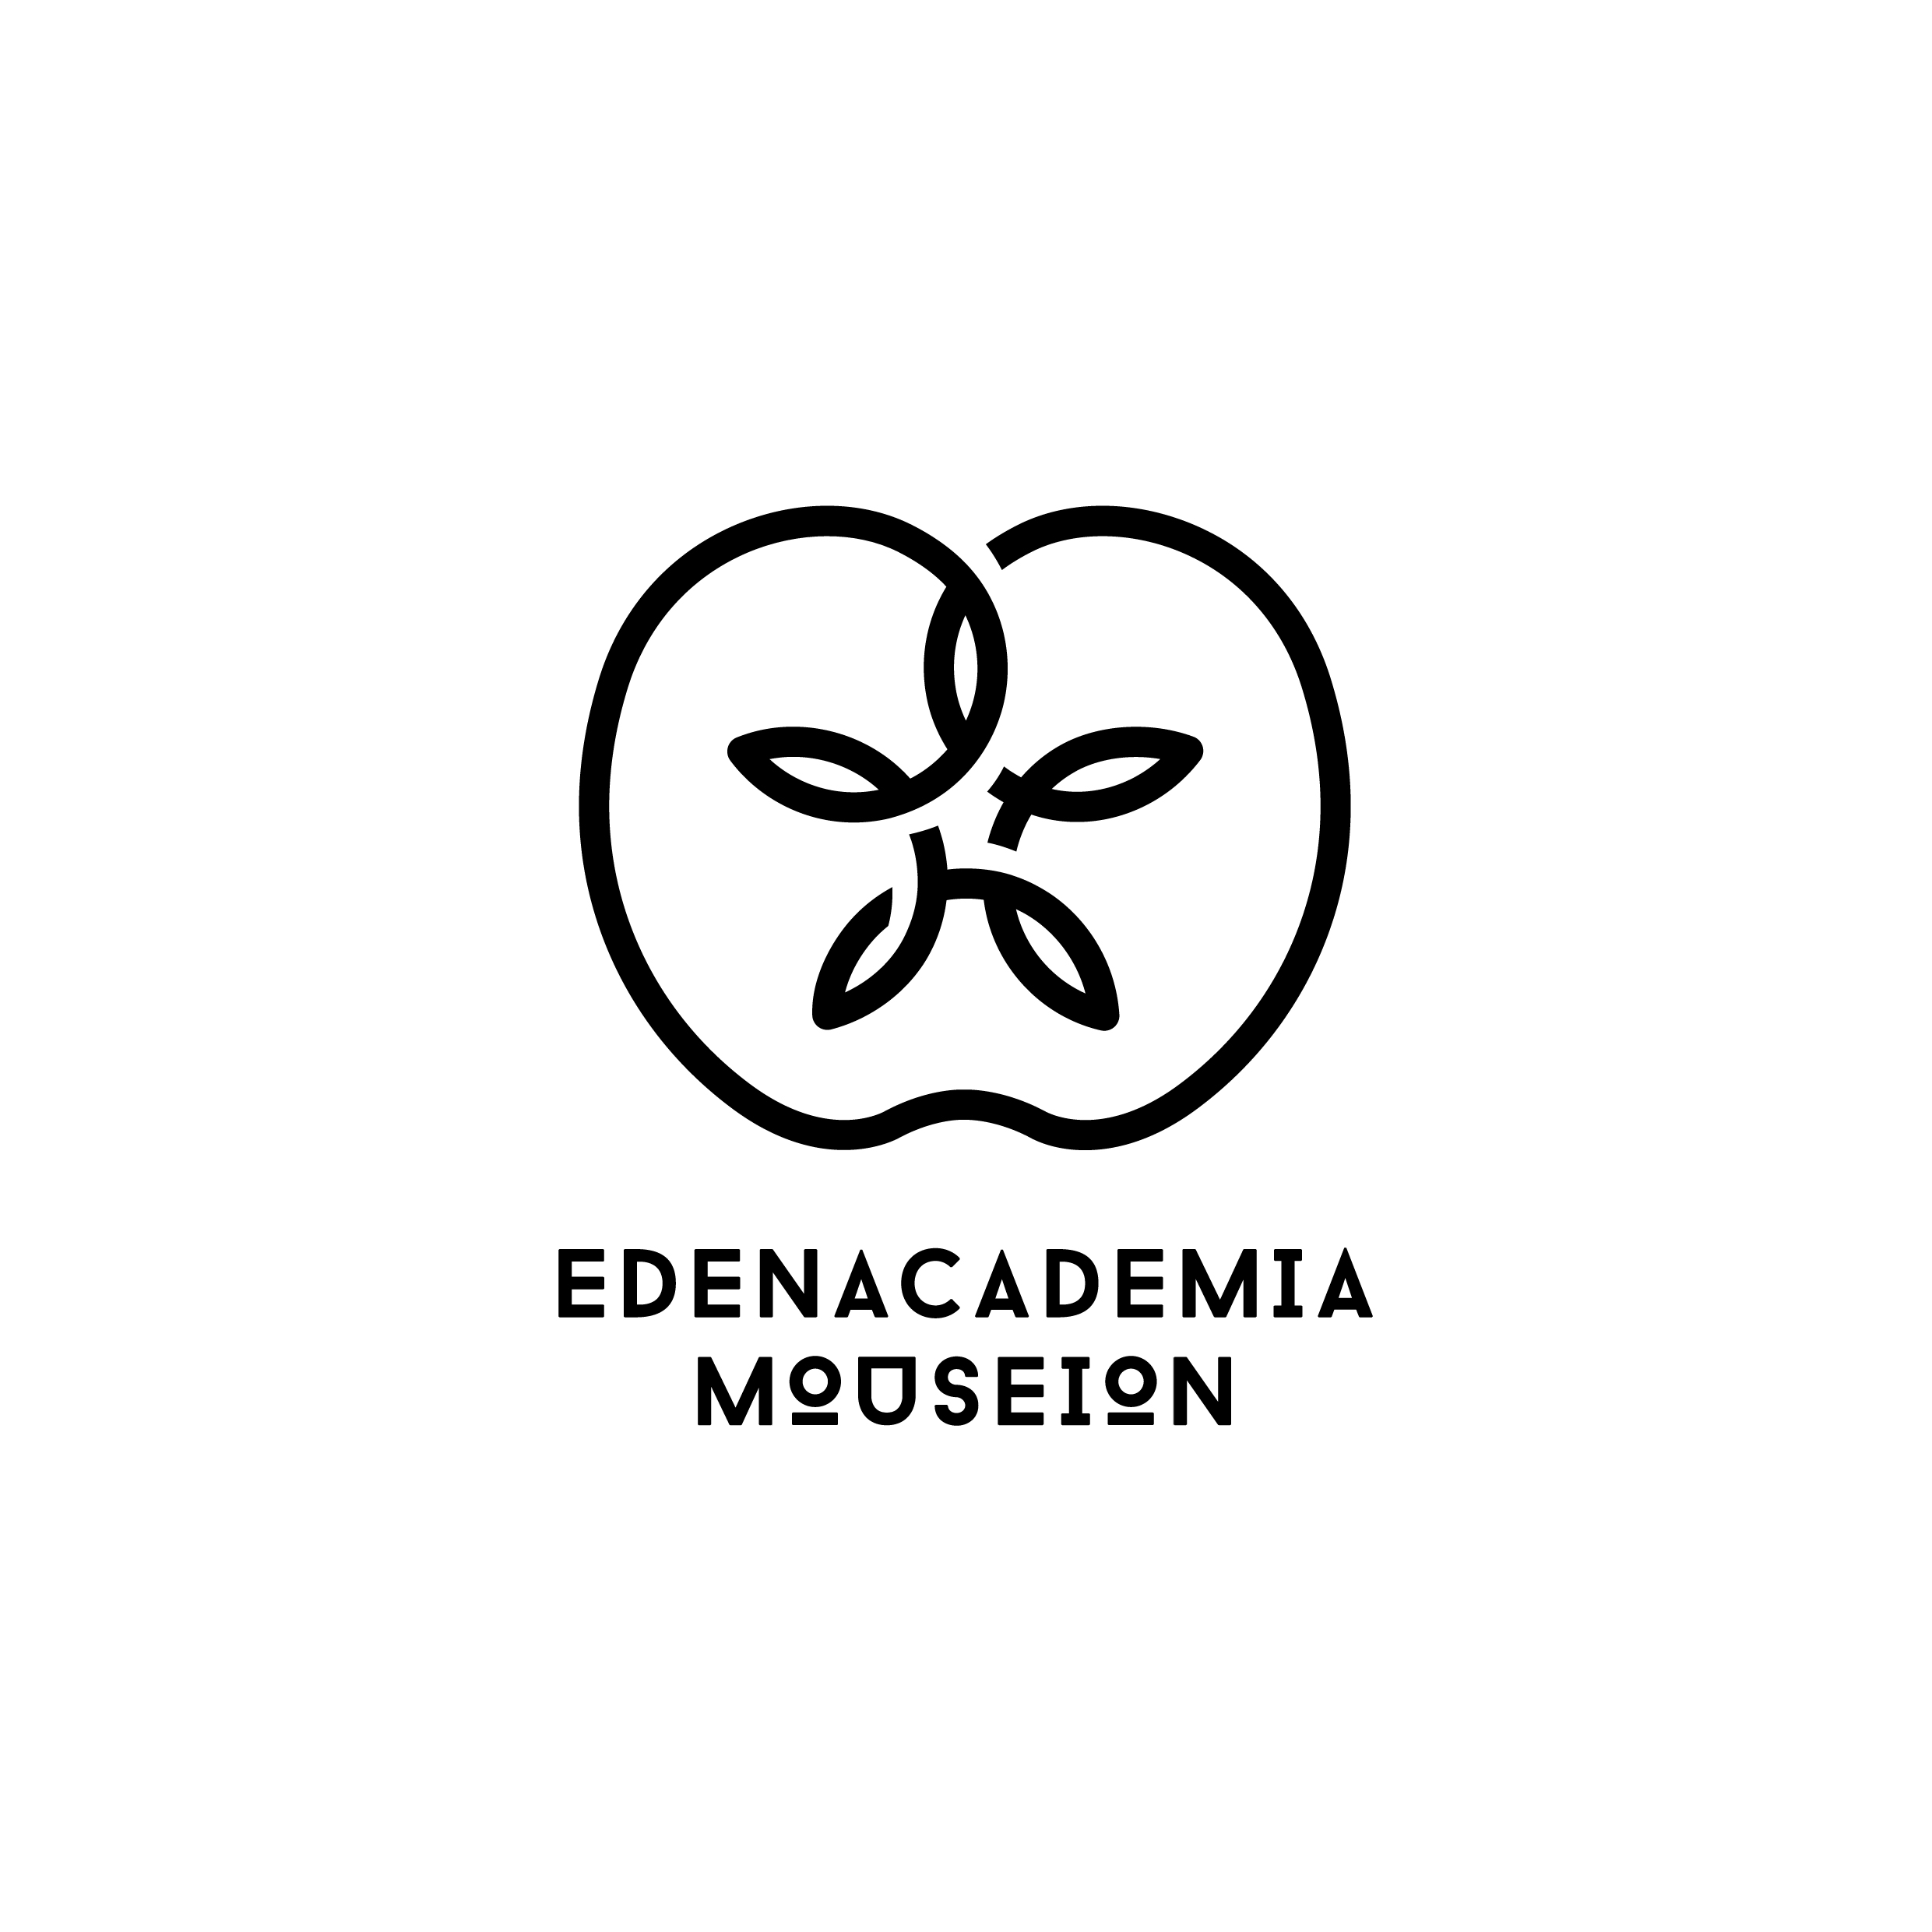 EDENACADEMIA_MOUSEION_LOGO_21x21cm_1